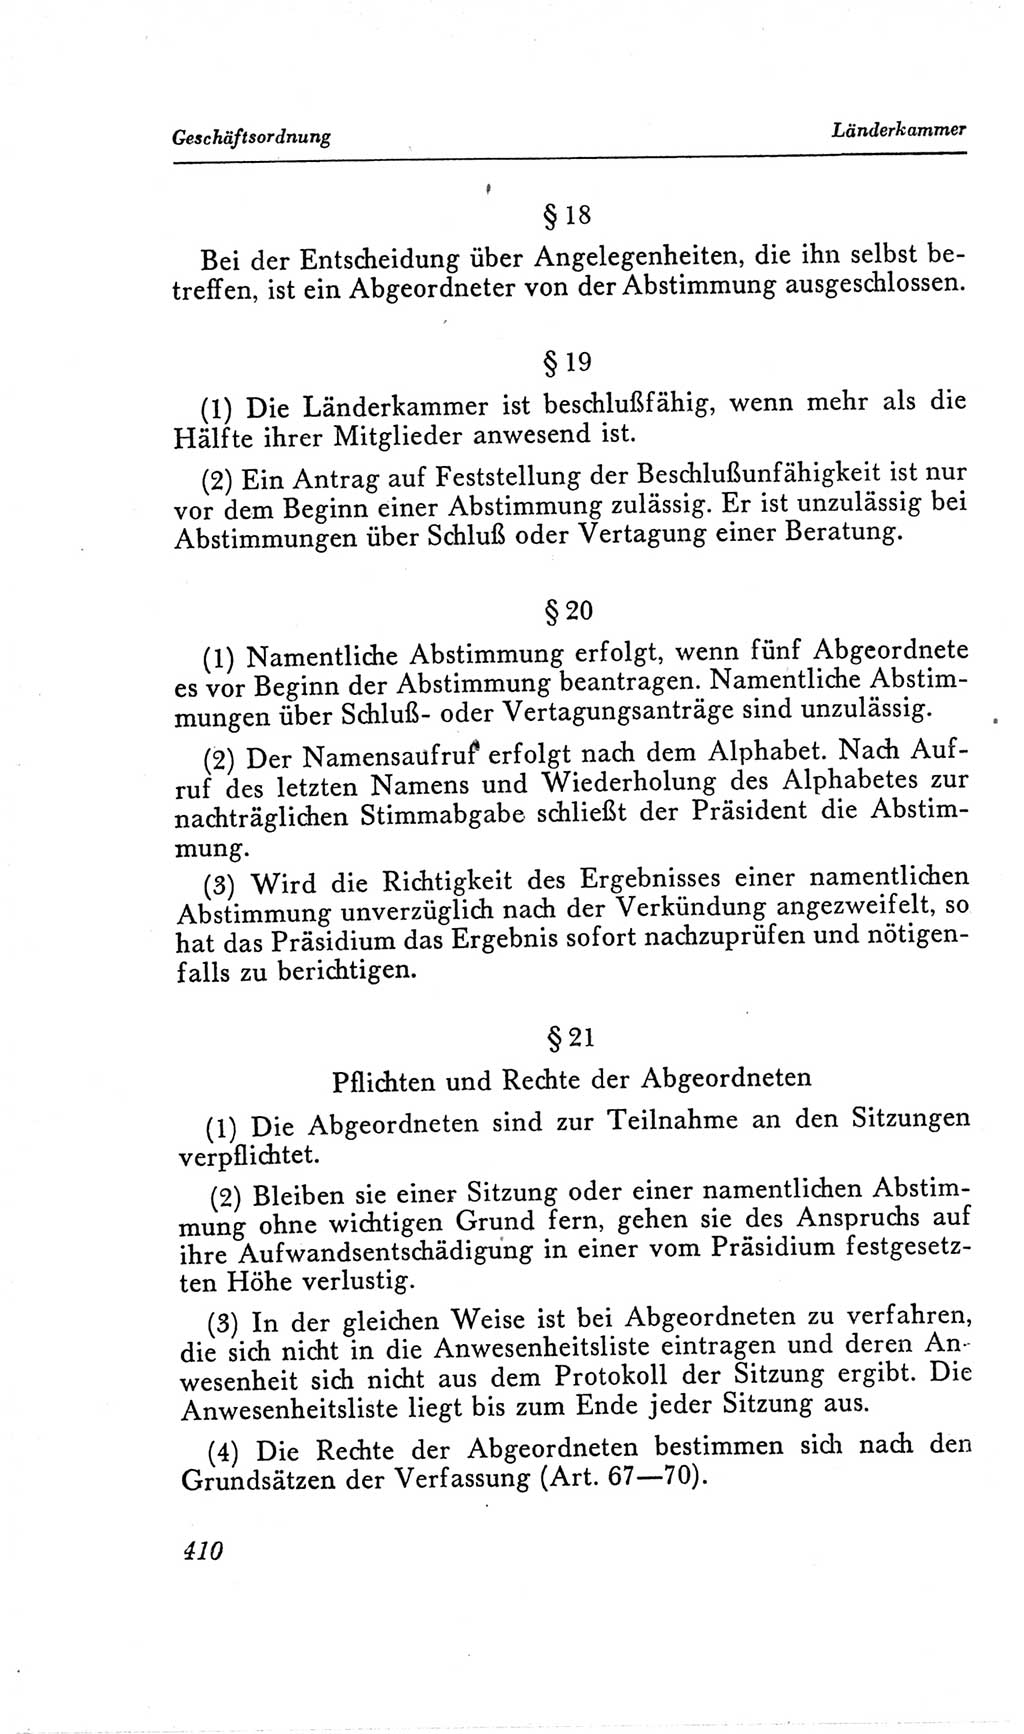 Handbuch der Volkskammer (VK) der Deutschen Demokratischen Republik (DDR), 2. Wahlperiode 1954-1958, Seite 410 (Hdb. VK. DDR, 2. WP. 1954-1958, S. 410)